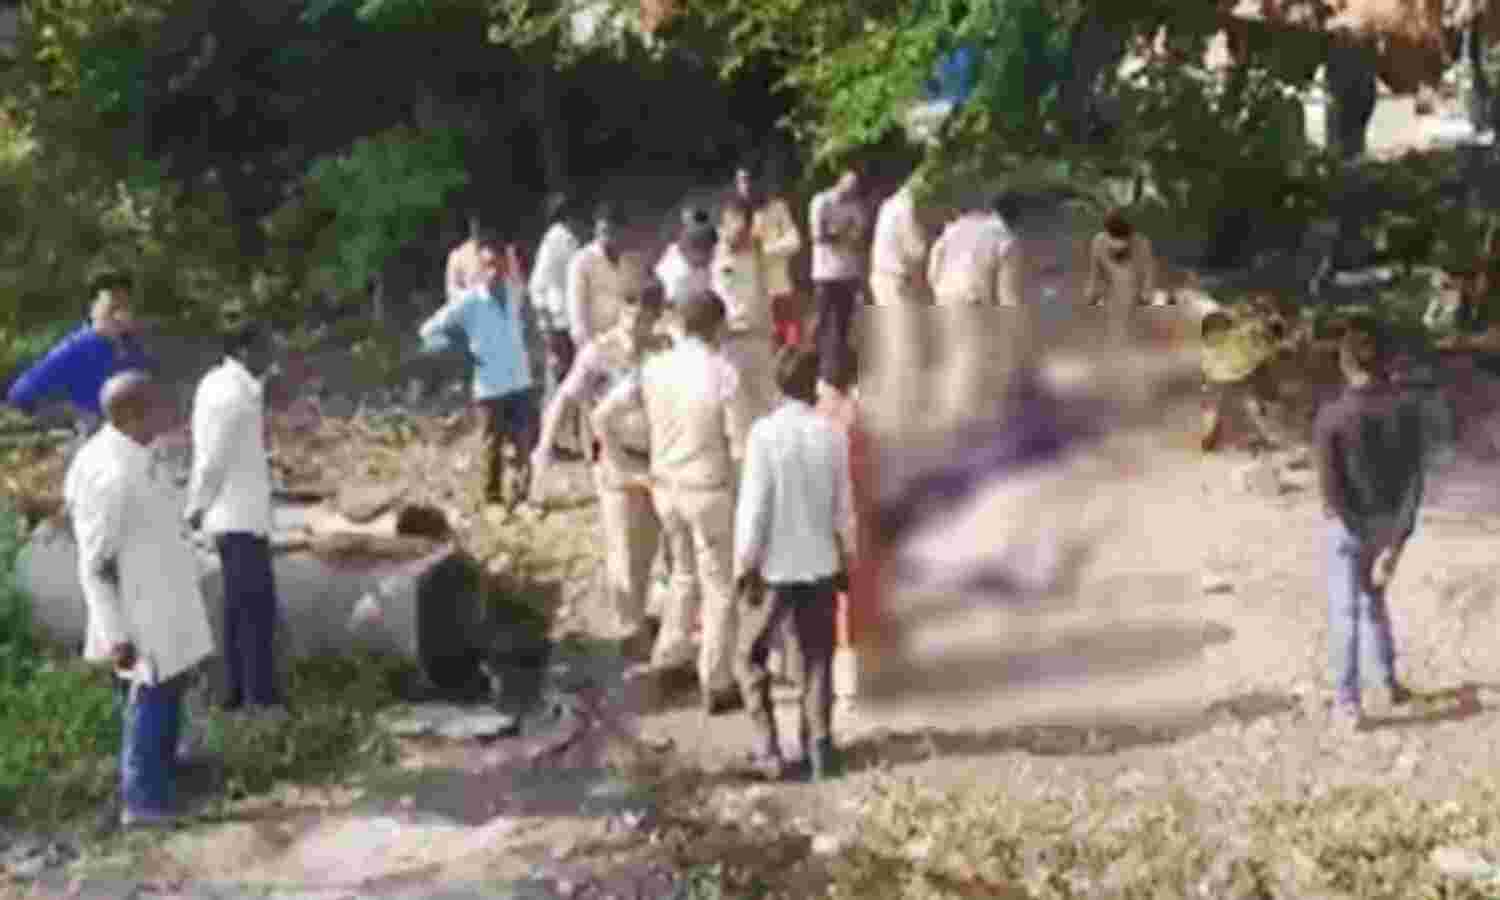 Madhya Pradesh Crime News : दमोह में दलित परिवार के पति-पत्नी और बेटे की गोली मारकर हत्या, सभी आरोपी फरार